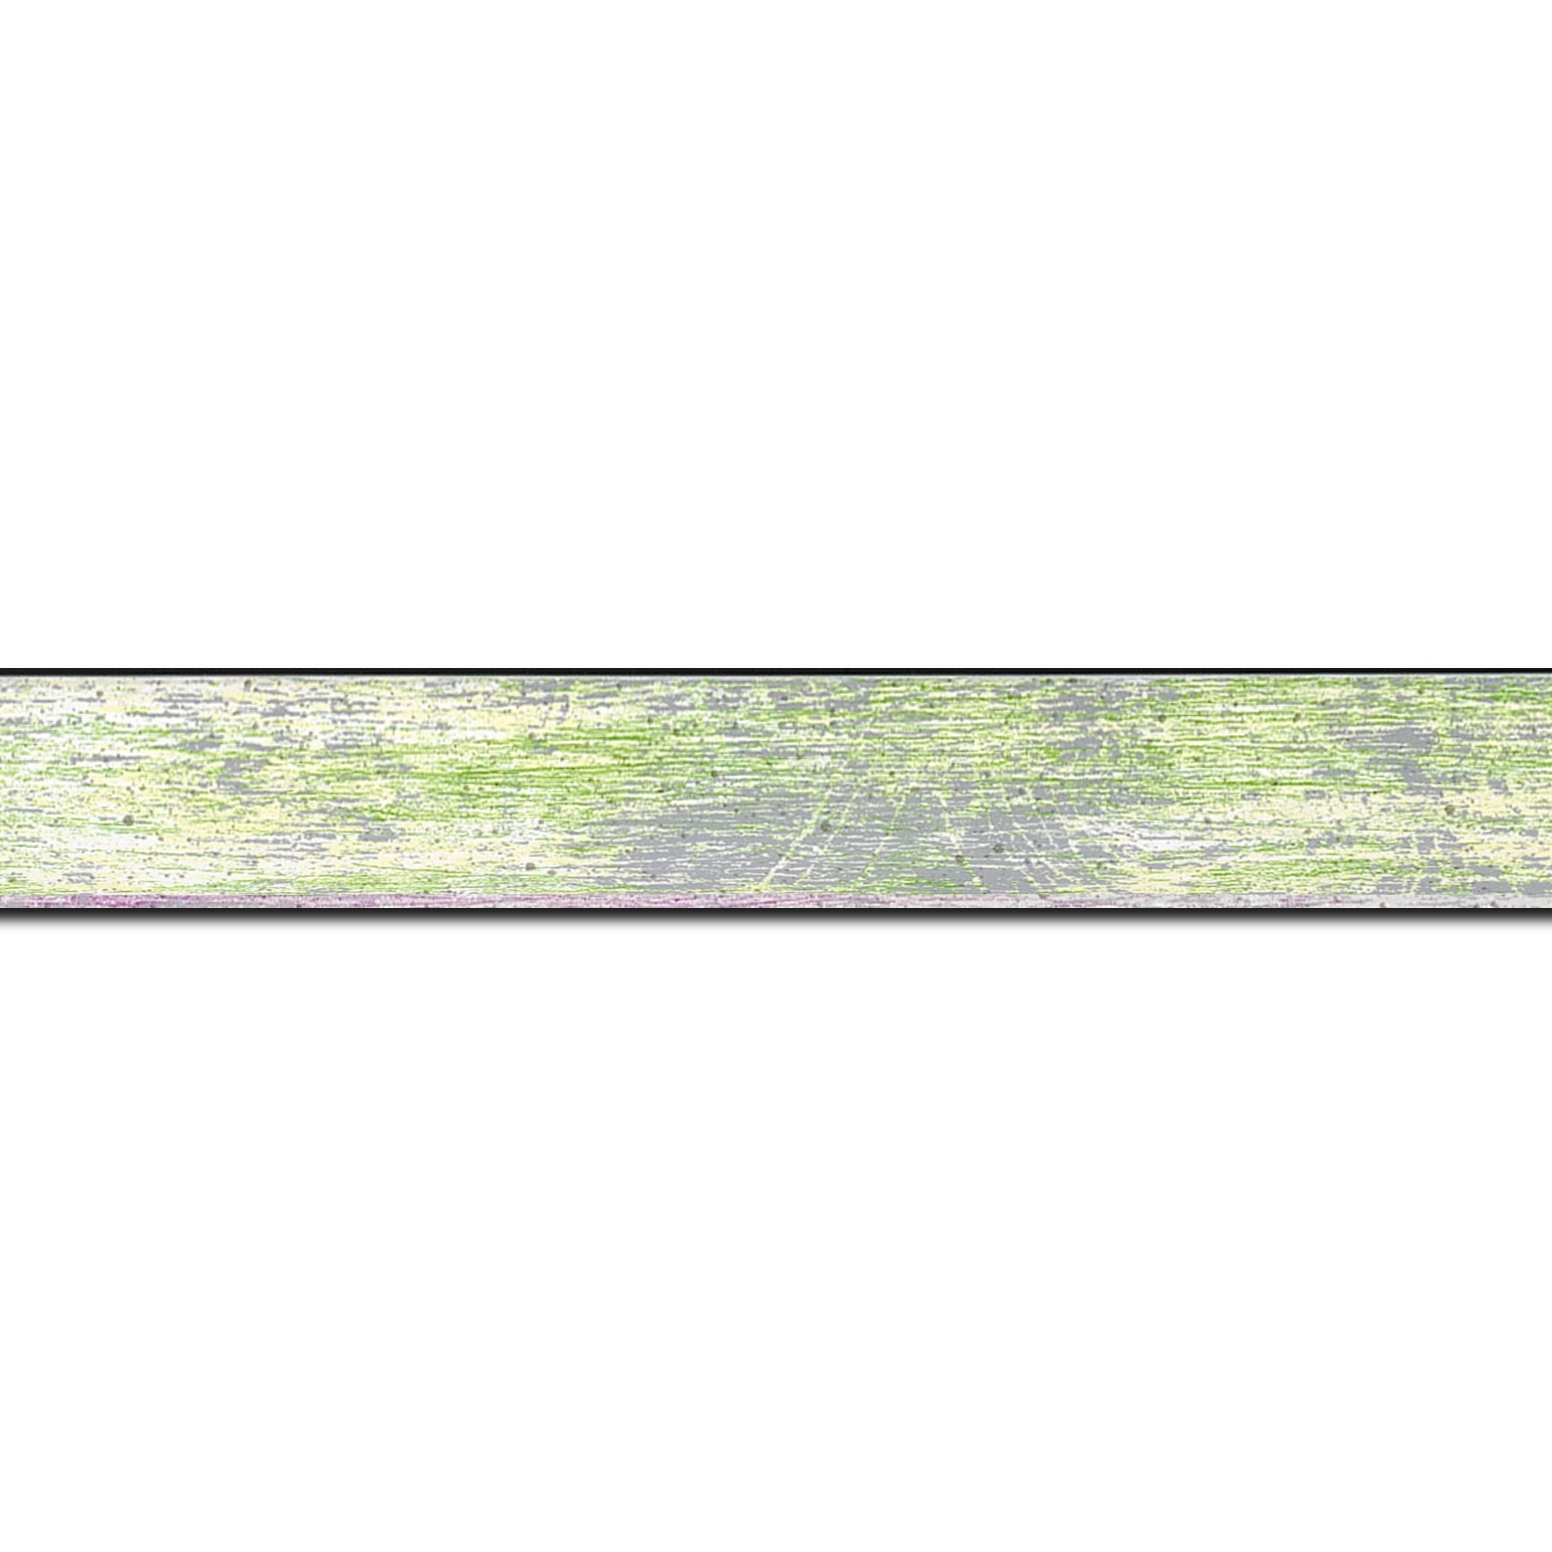 Baguette longueur 1.40m bois profil concave largeur 2.4cm de couleur vert pale fond argent